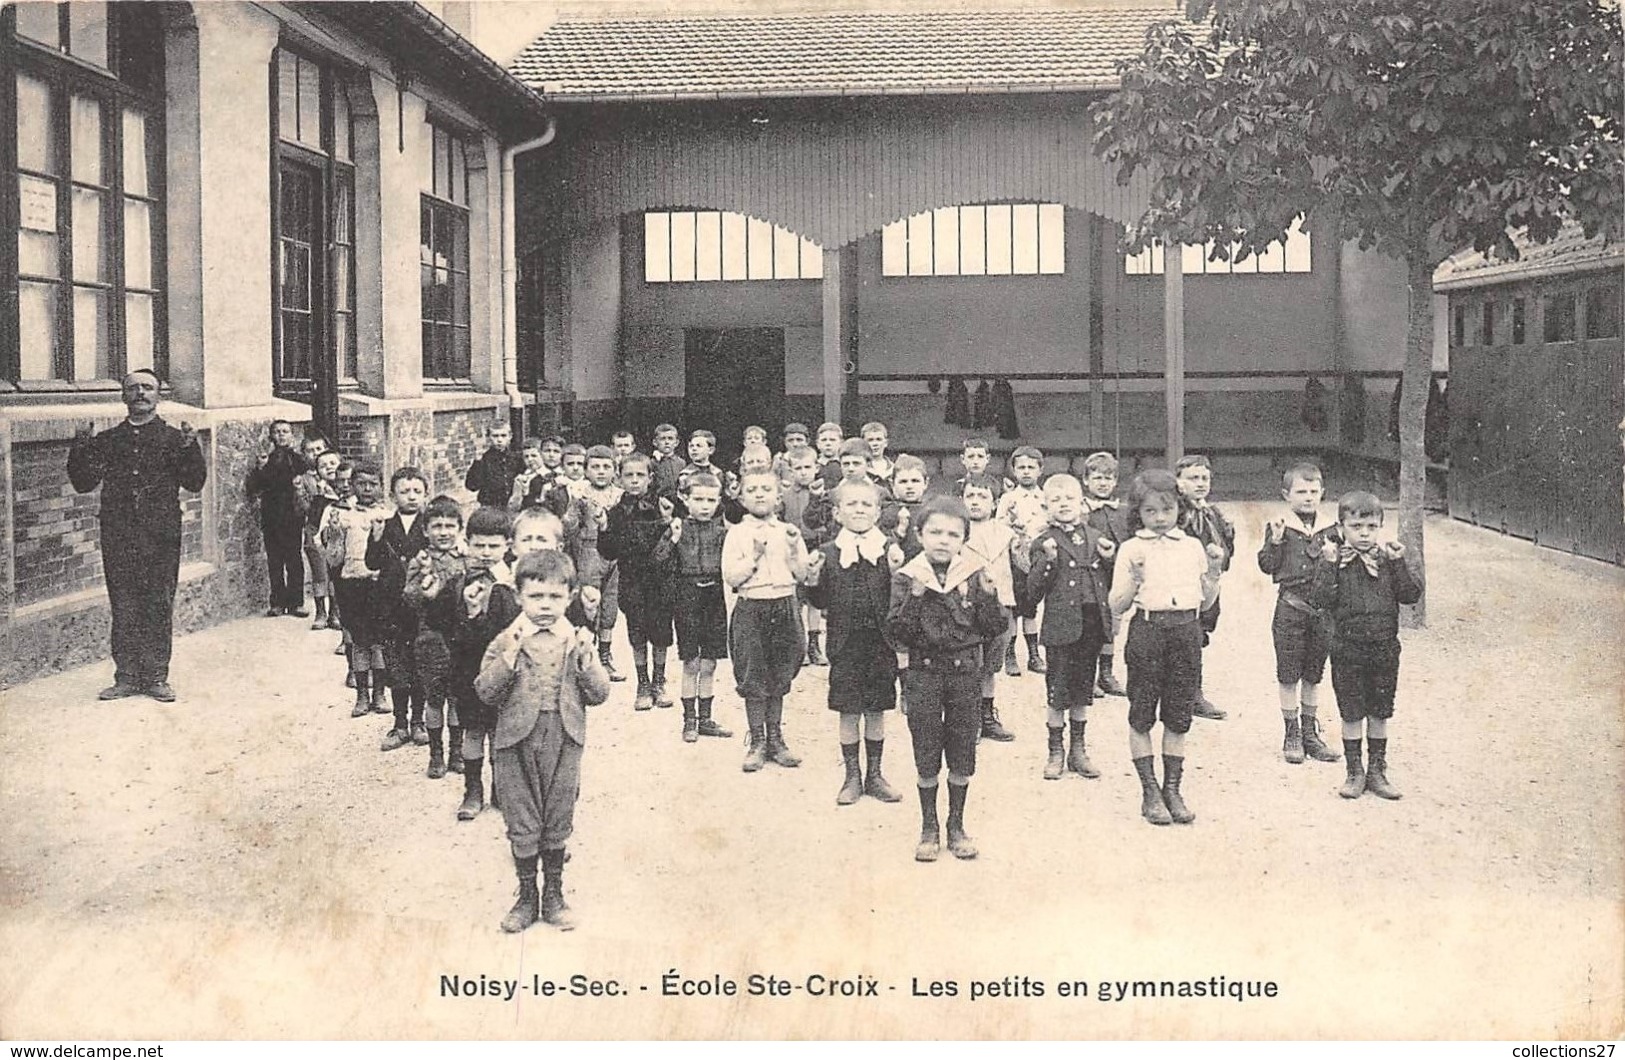 93-NOISY-LE-SEC- ECOLE SAINTE-CROIX- LES PETITS EN GYMNASTIQUE - Noisy Le Sec